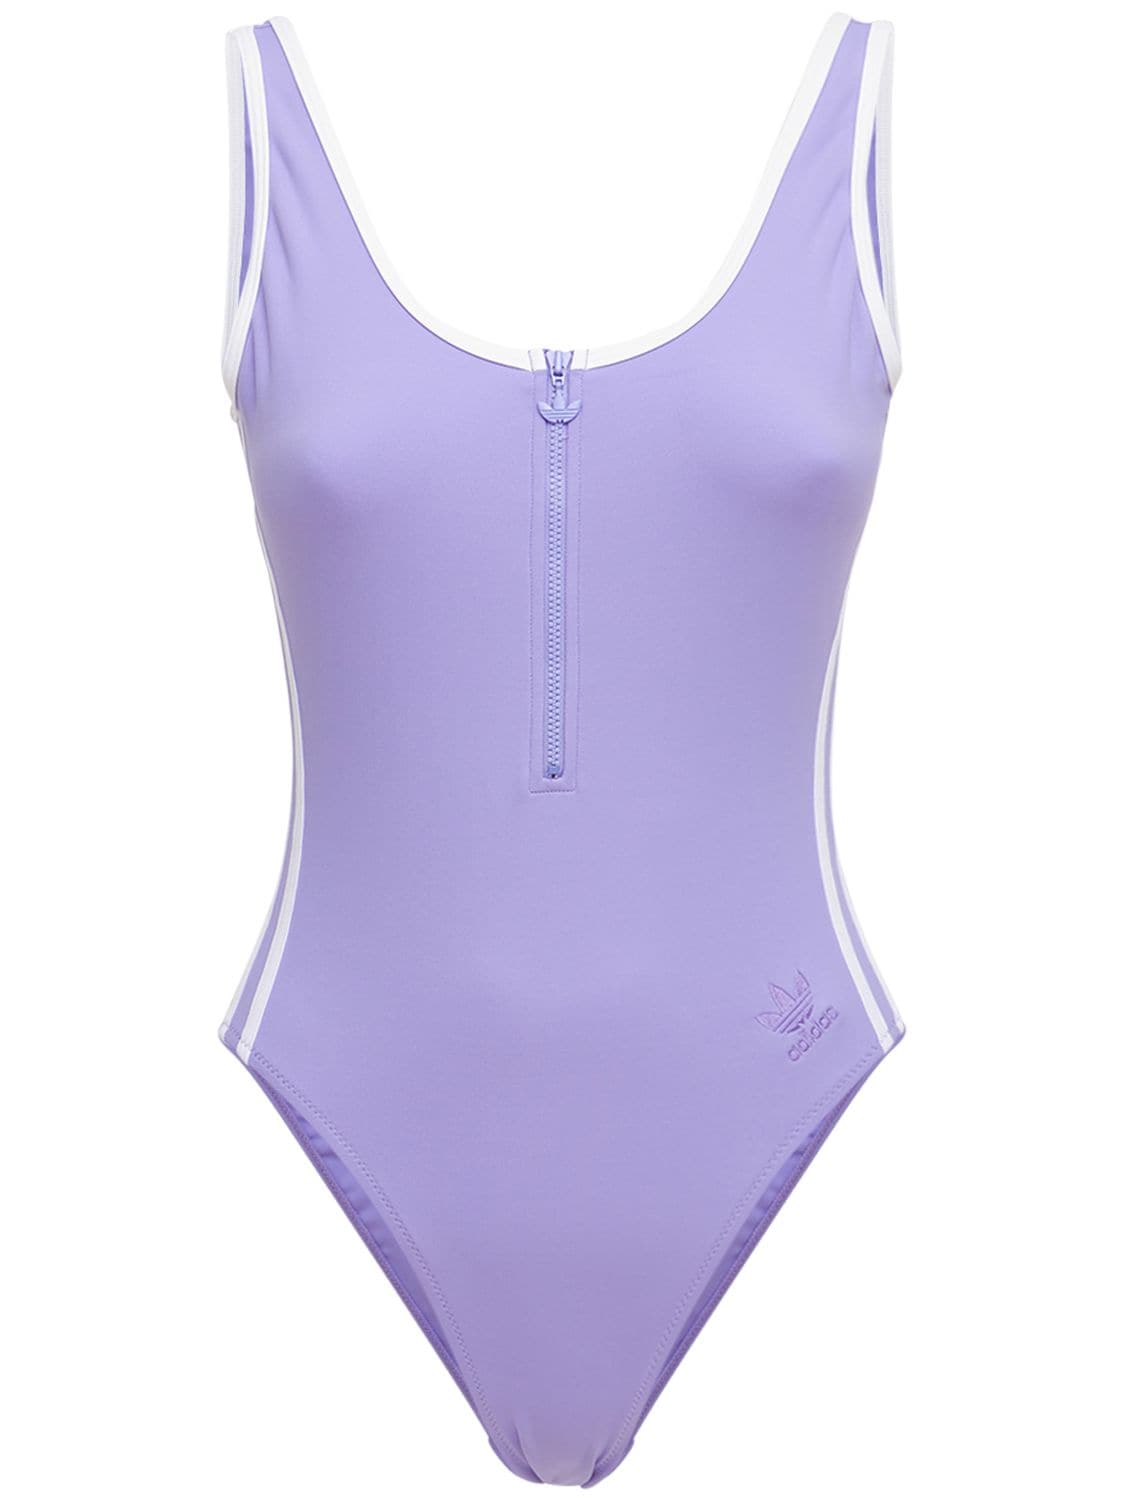 Adidas Originals Adidas Women's Originals Adicolor Classics Primeblue Swimsuit In Light Purple